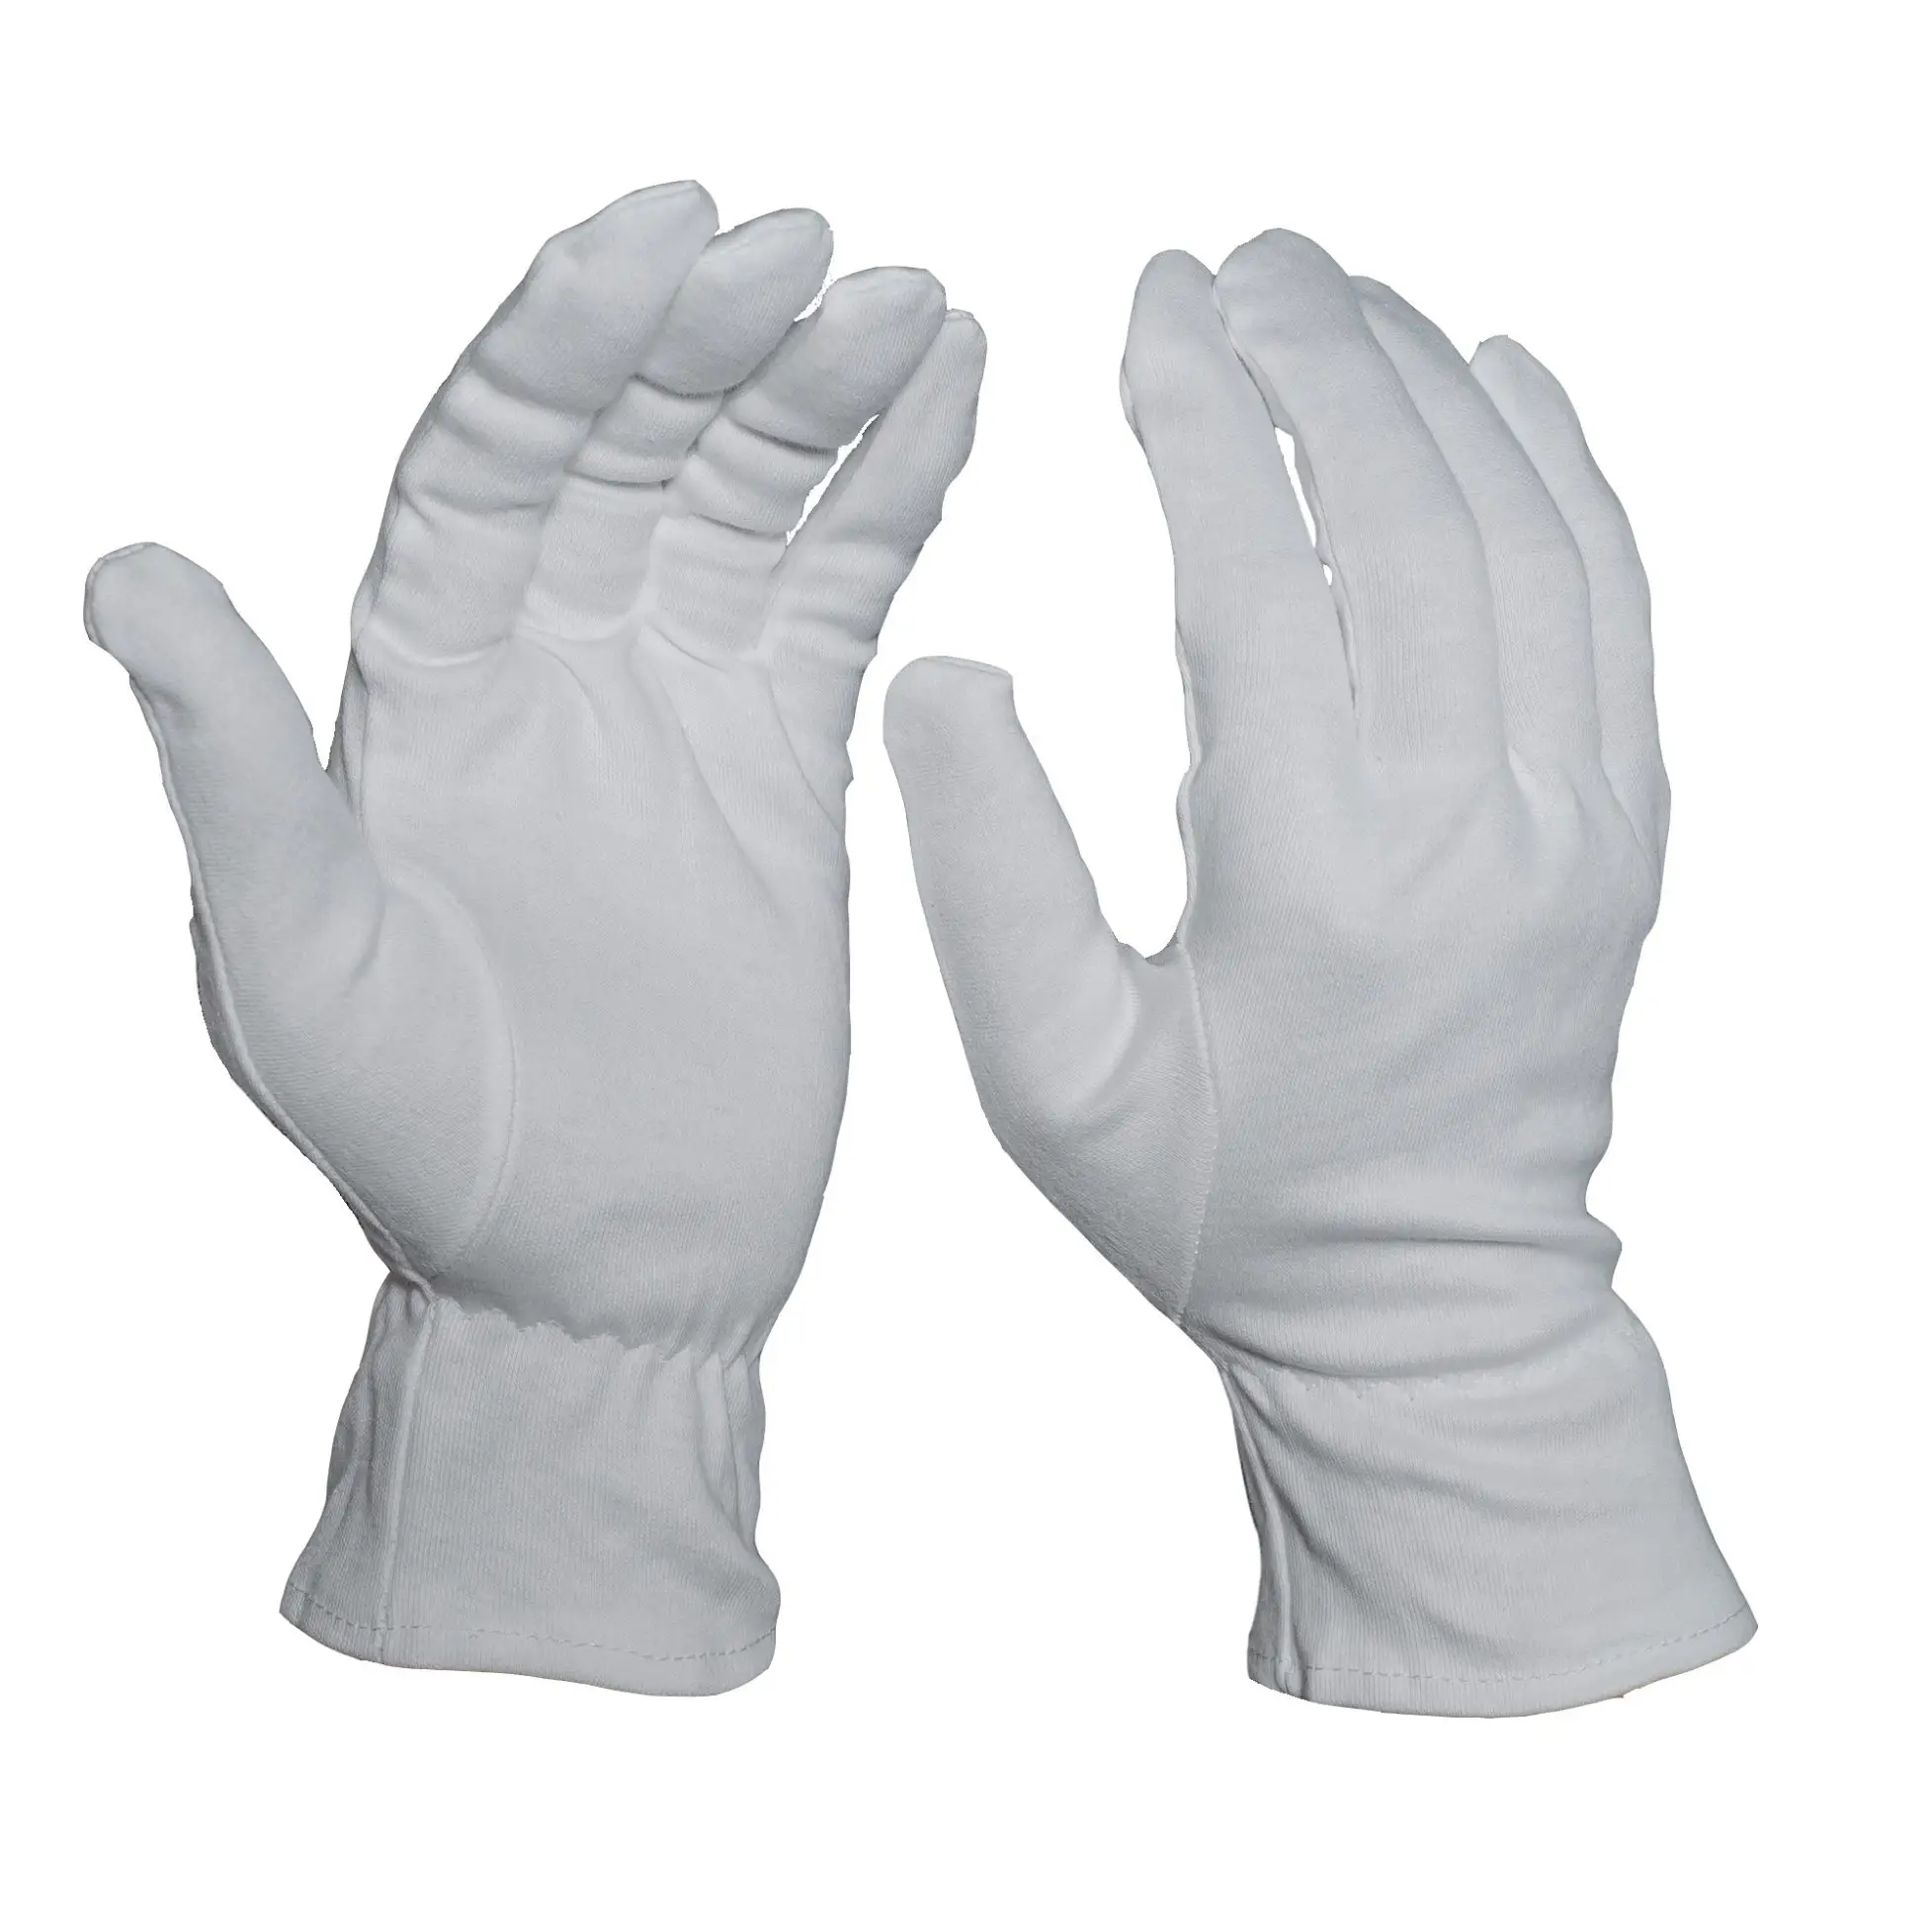 Egzama doğal saf beyaz kuru eller gecelik uyku zamanı uyku pamuk eldivenler